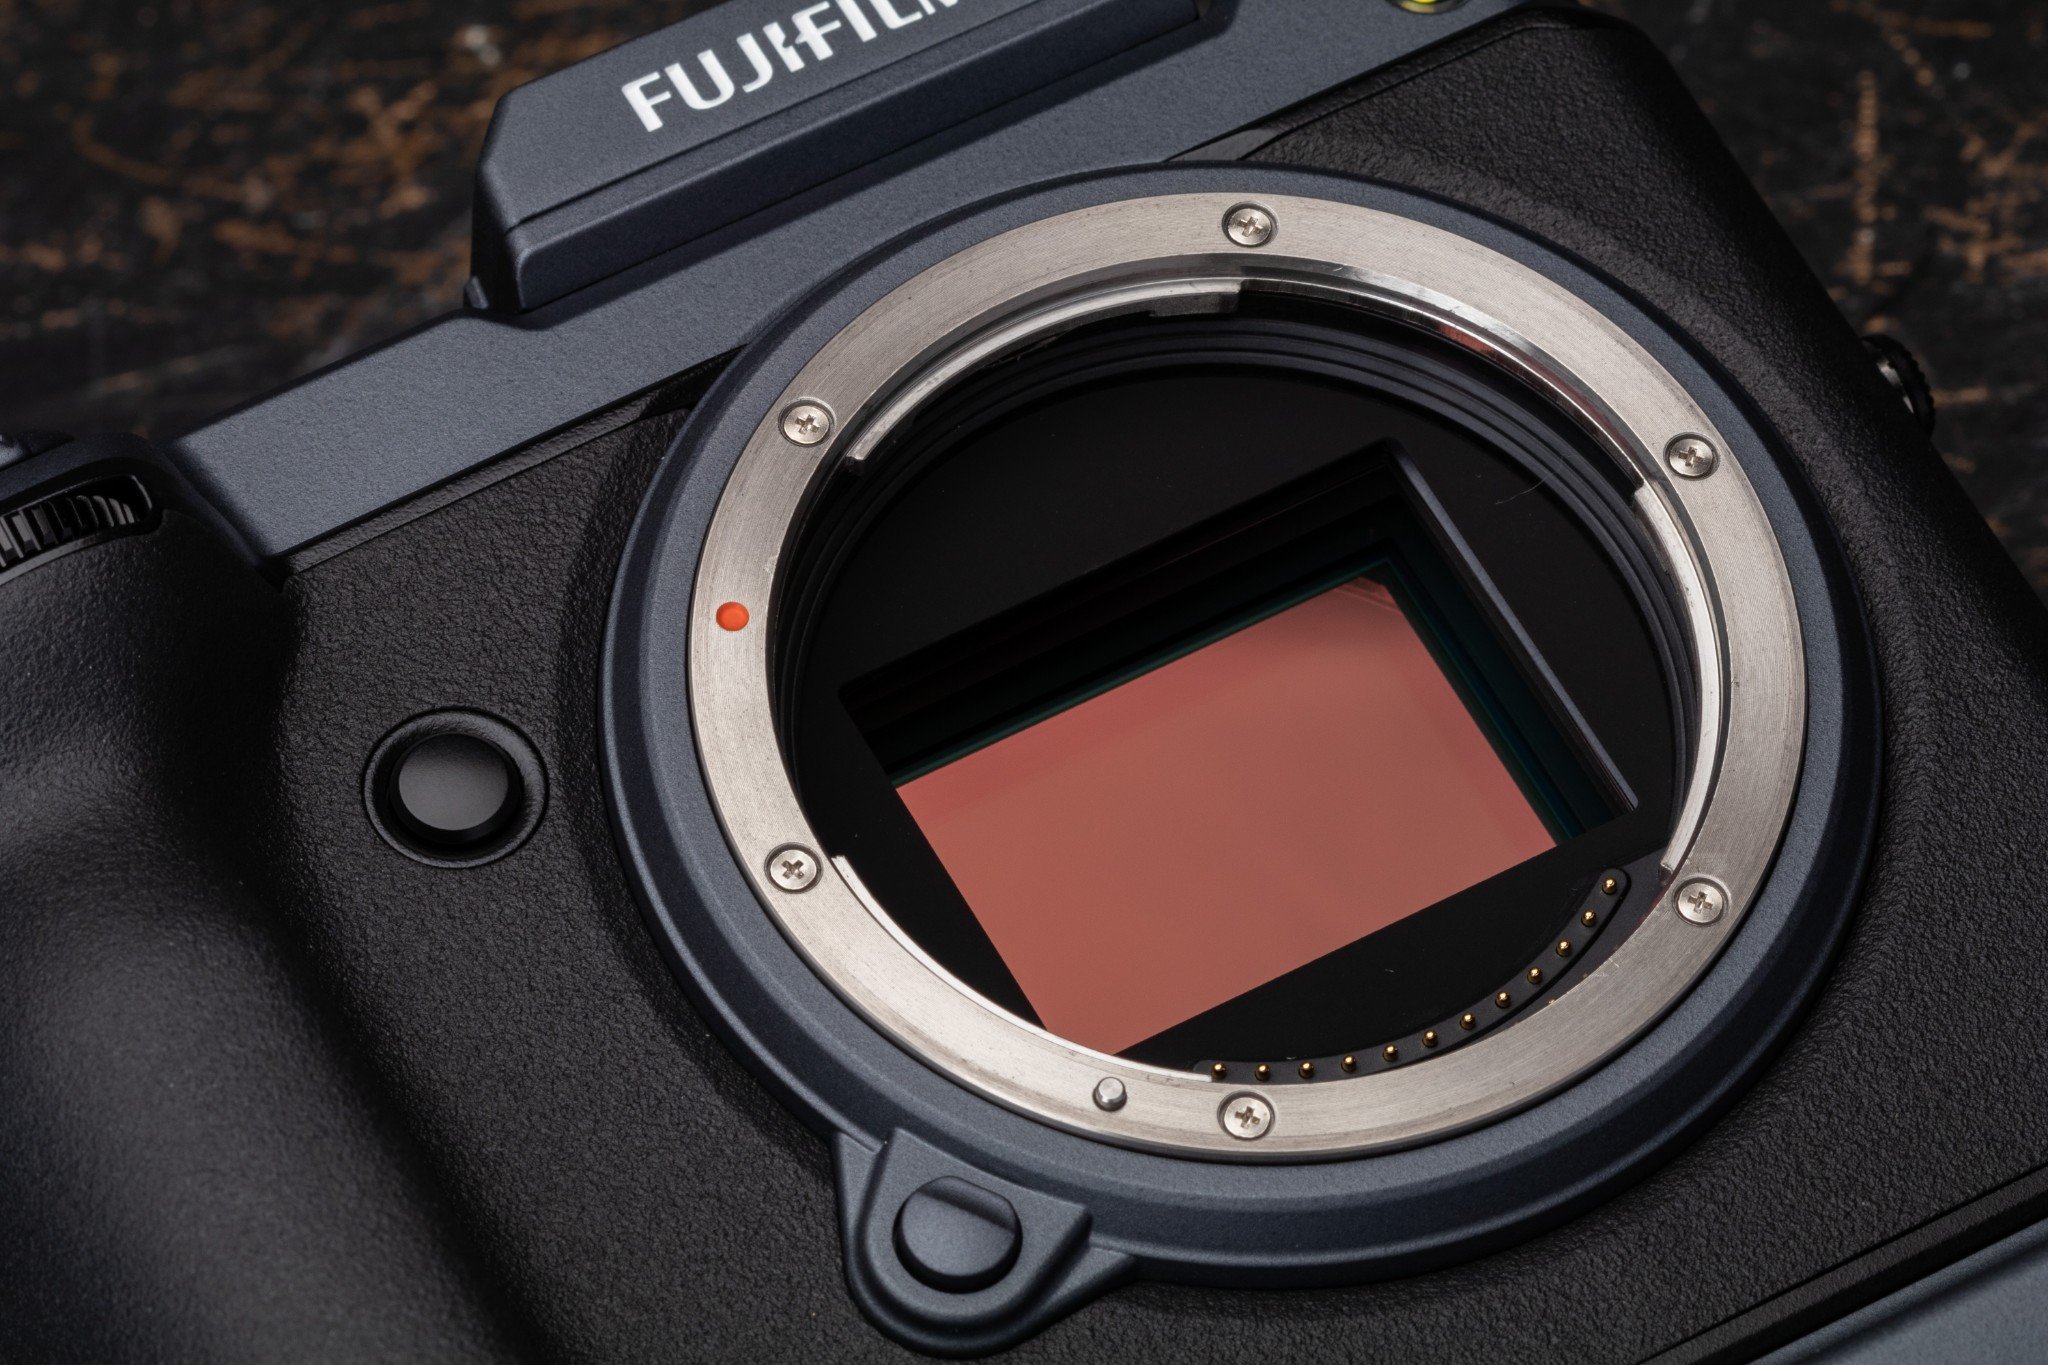 Fujifilm cập nhật firmware mới, thêm tính năng Pixel Shift Multi-Shot chụp ảnh 400MP lên GFX100